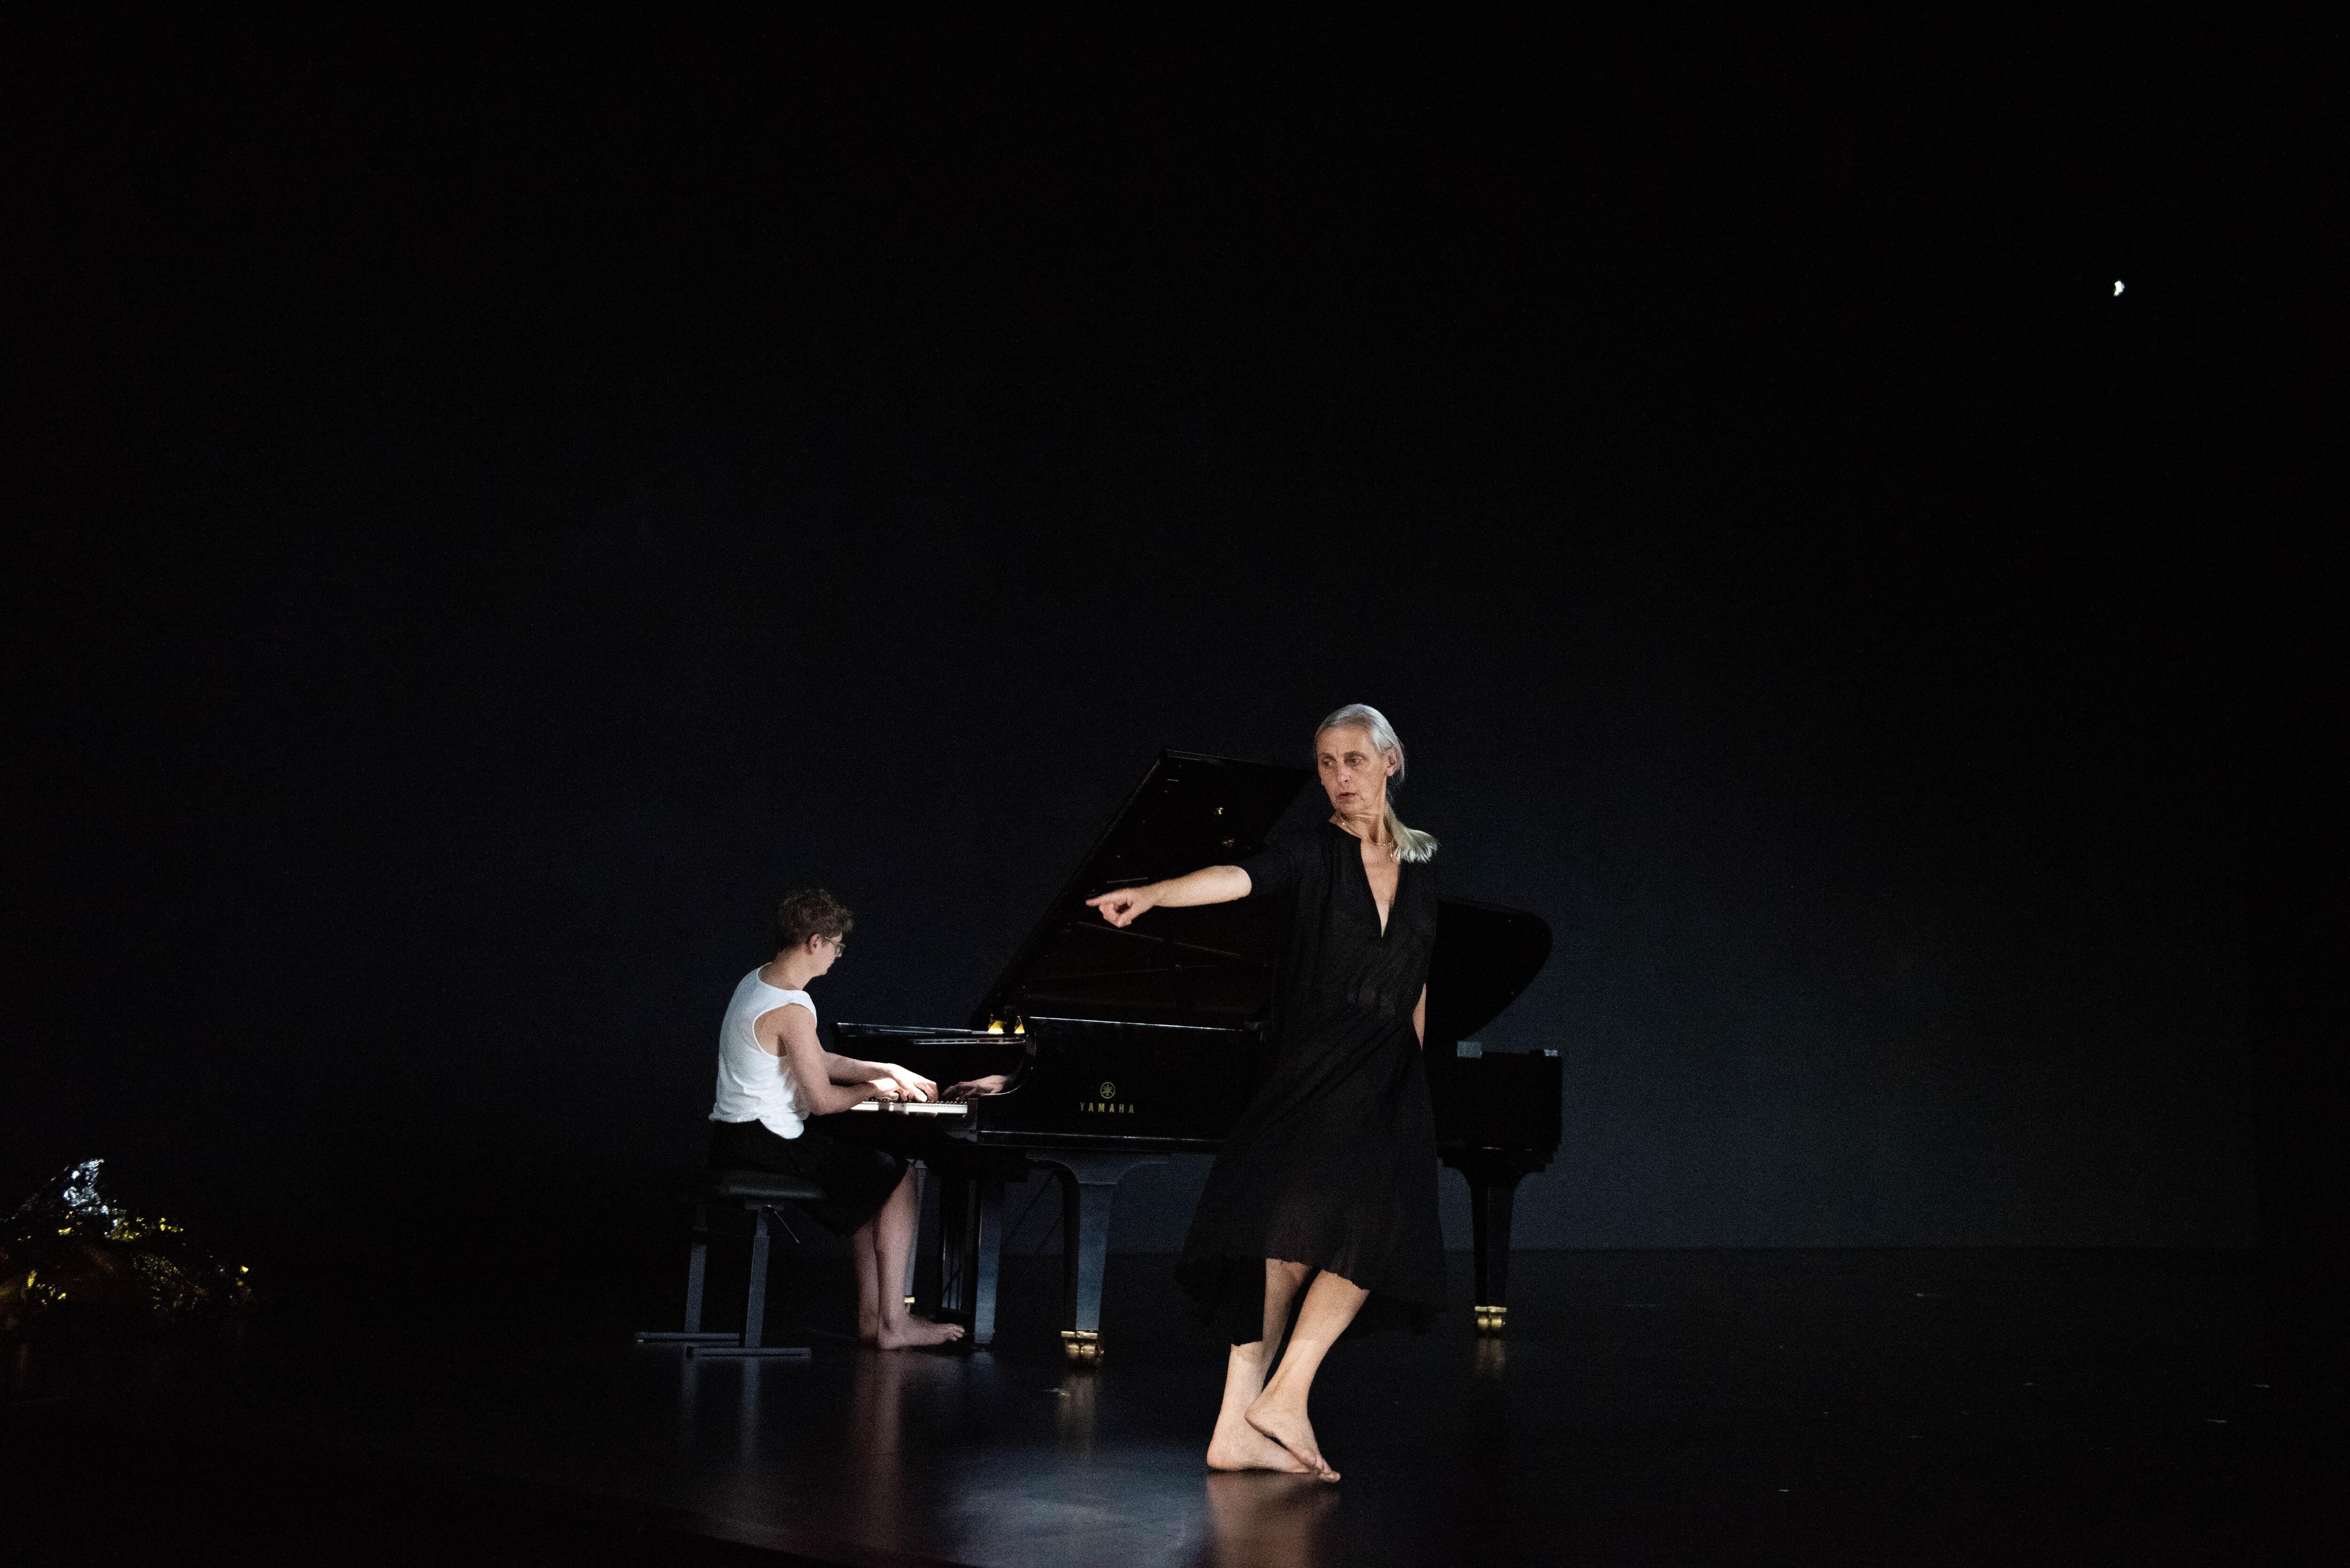 一名身穿深V领黑色连衣裙的舞者，指向左边，赤足朝相反方向走去，身后是一名在黑色舞台上弹奏三角钢琴的年轻男子。